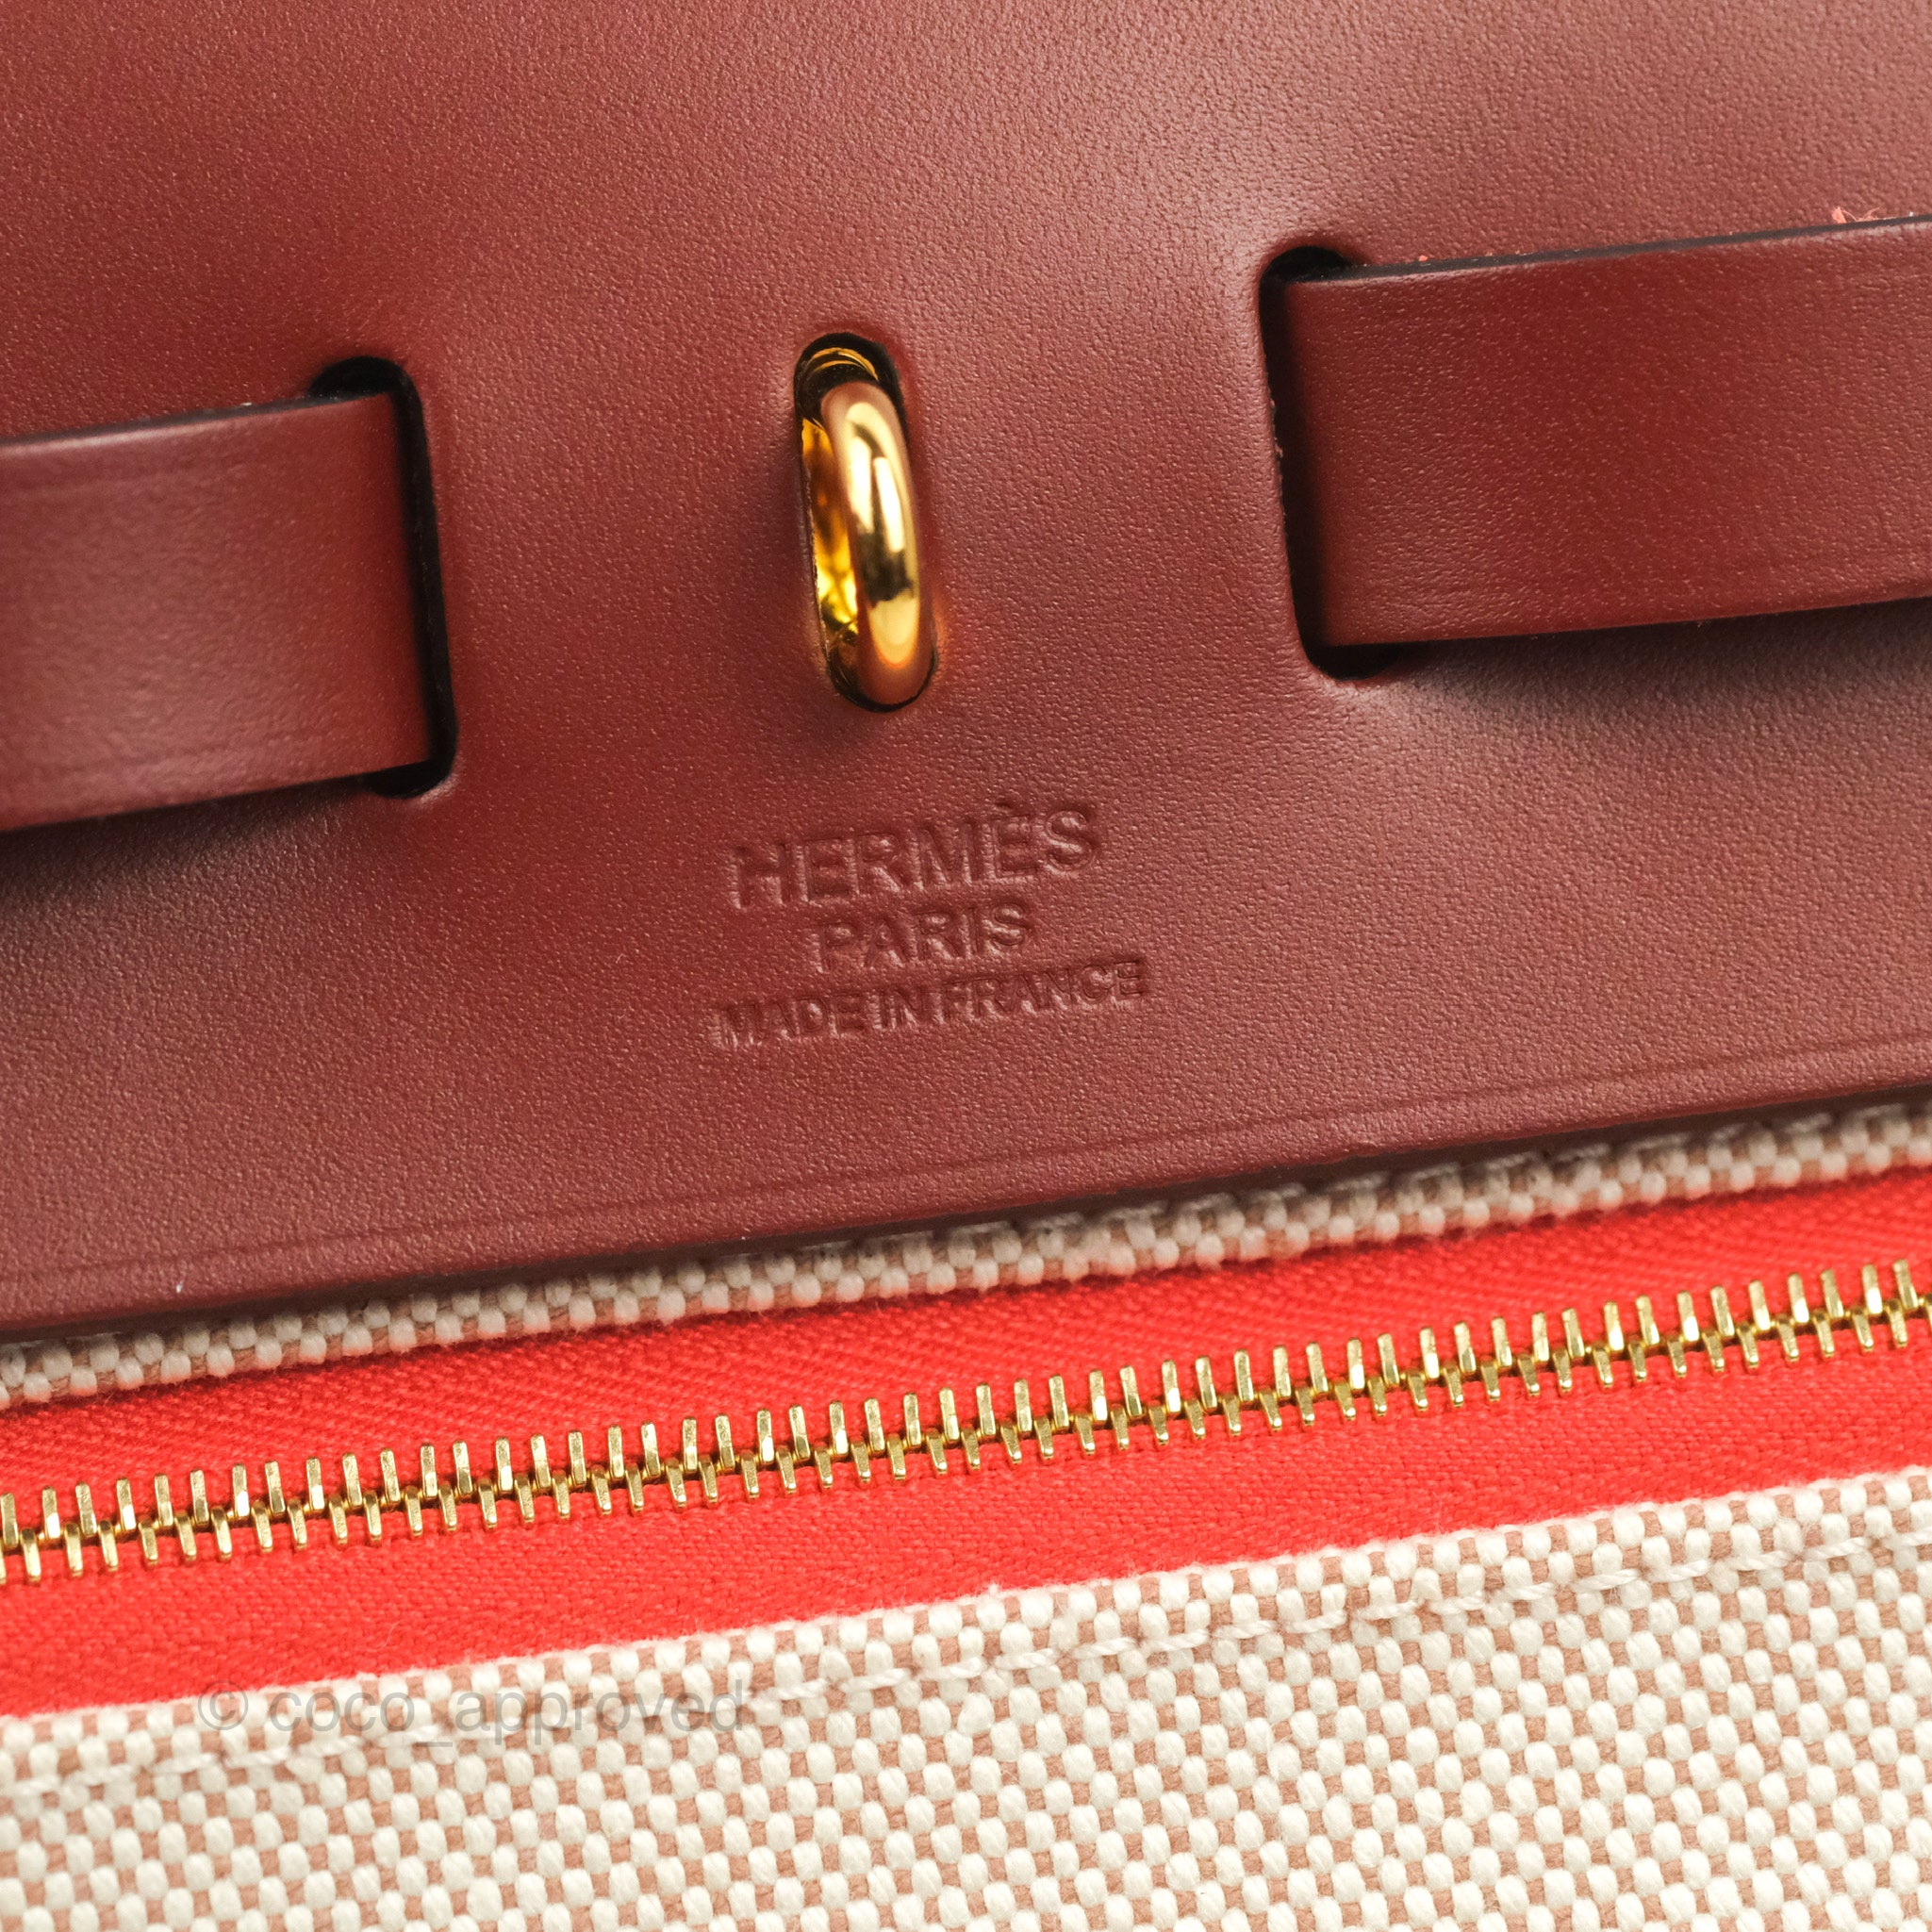 Hermès Herbag 31 Rouge H